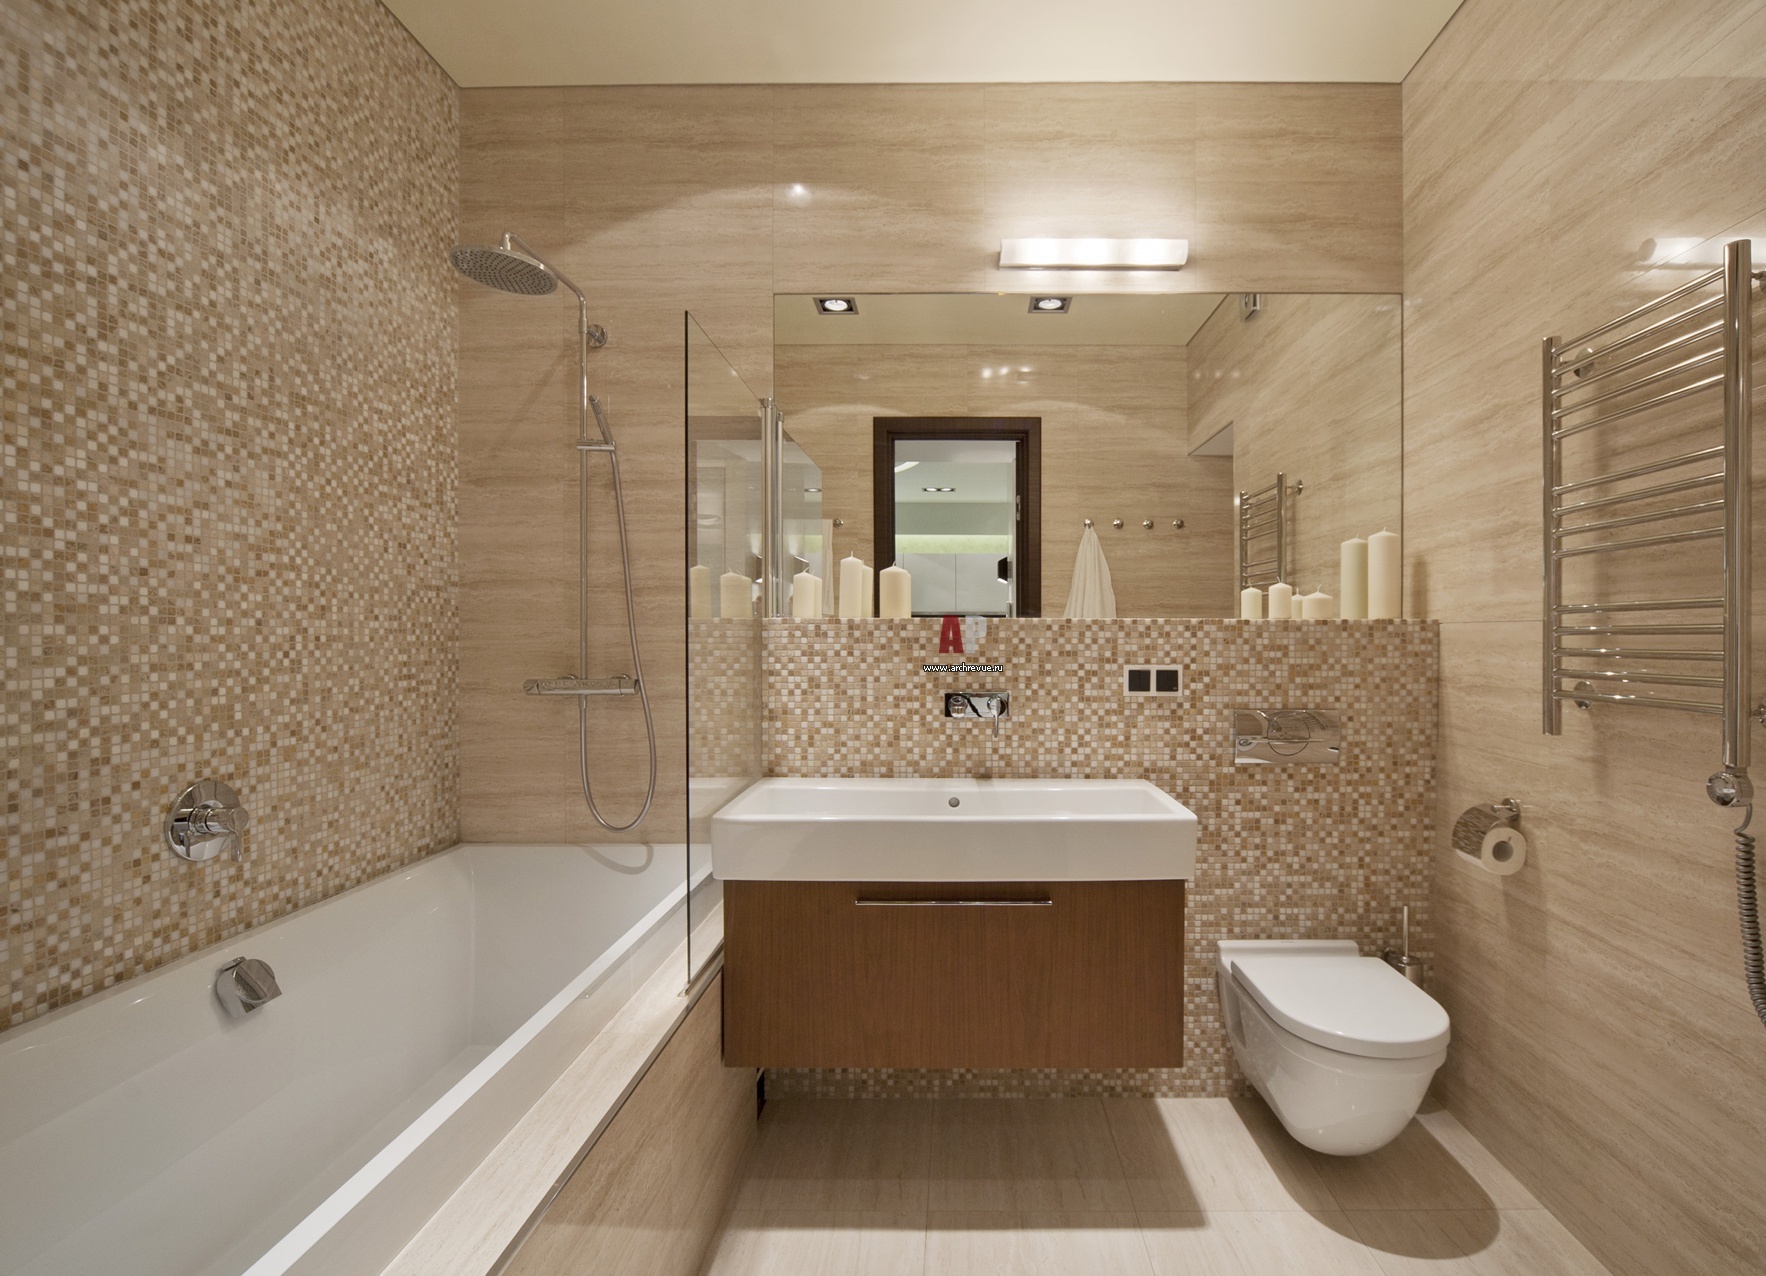 Отделка ванной комнаты стеновыми панелями.фото » Современный дизайн на .